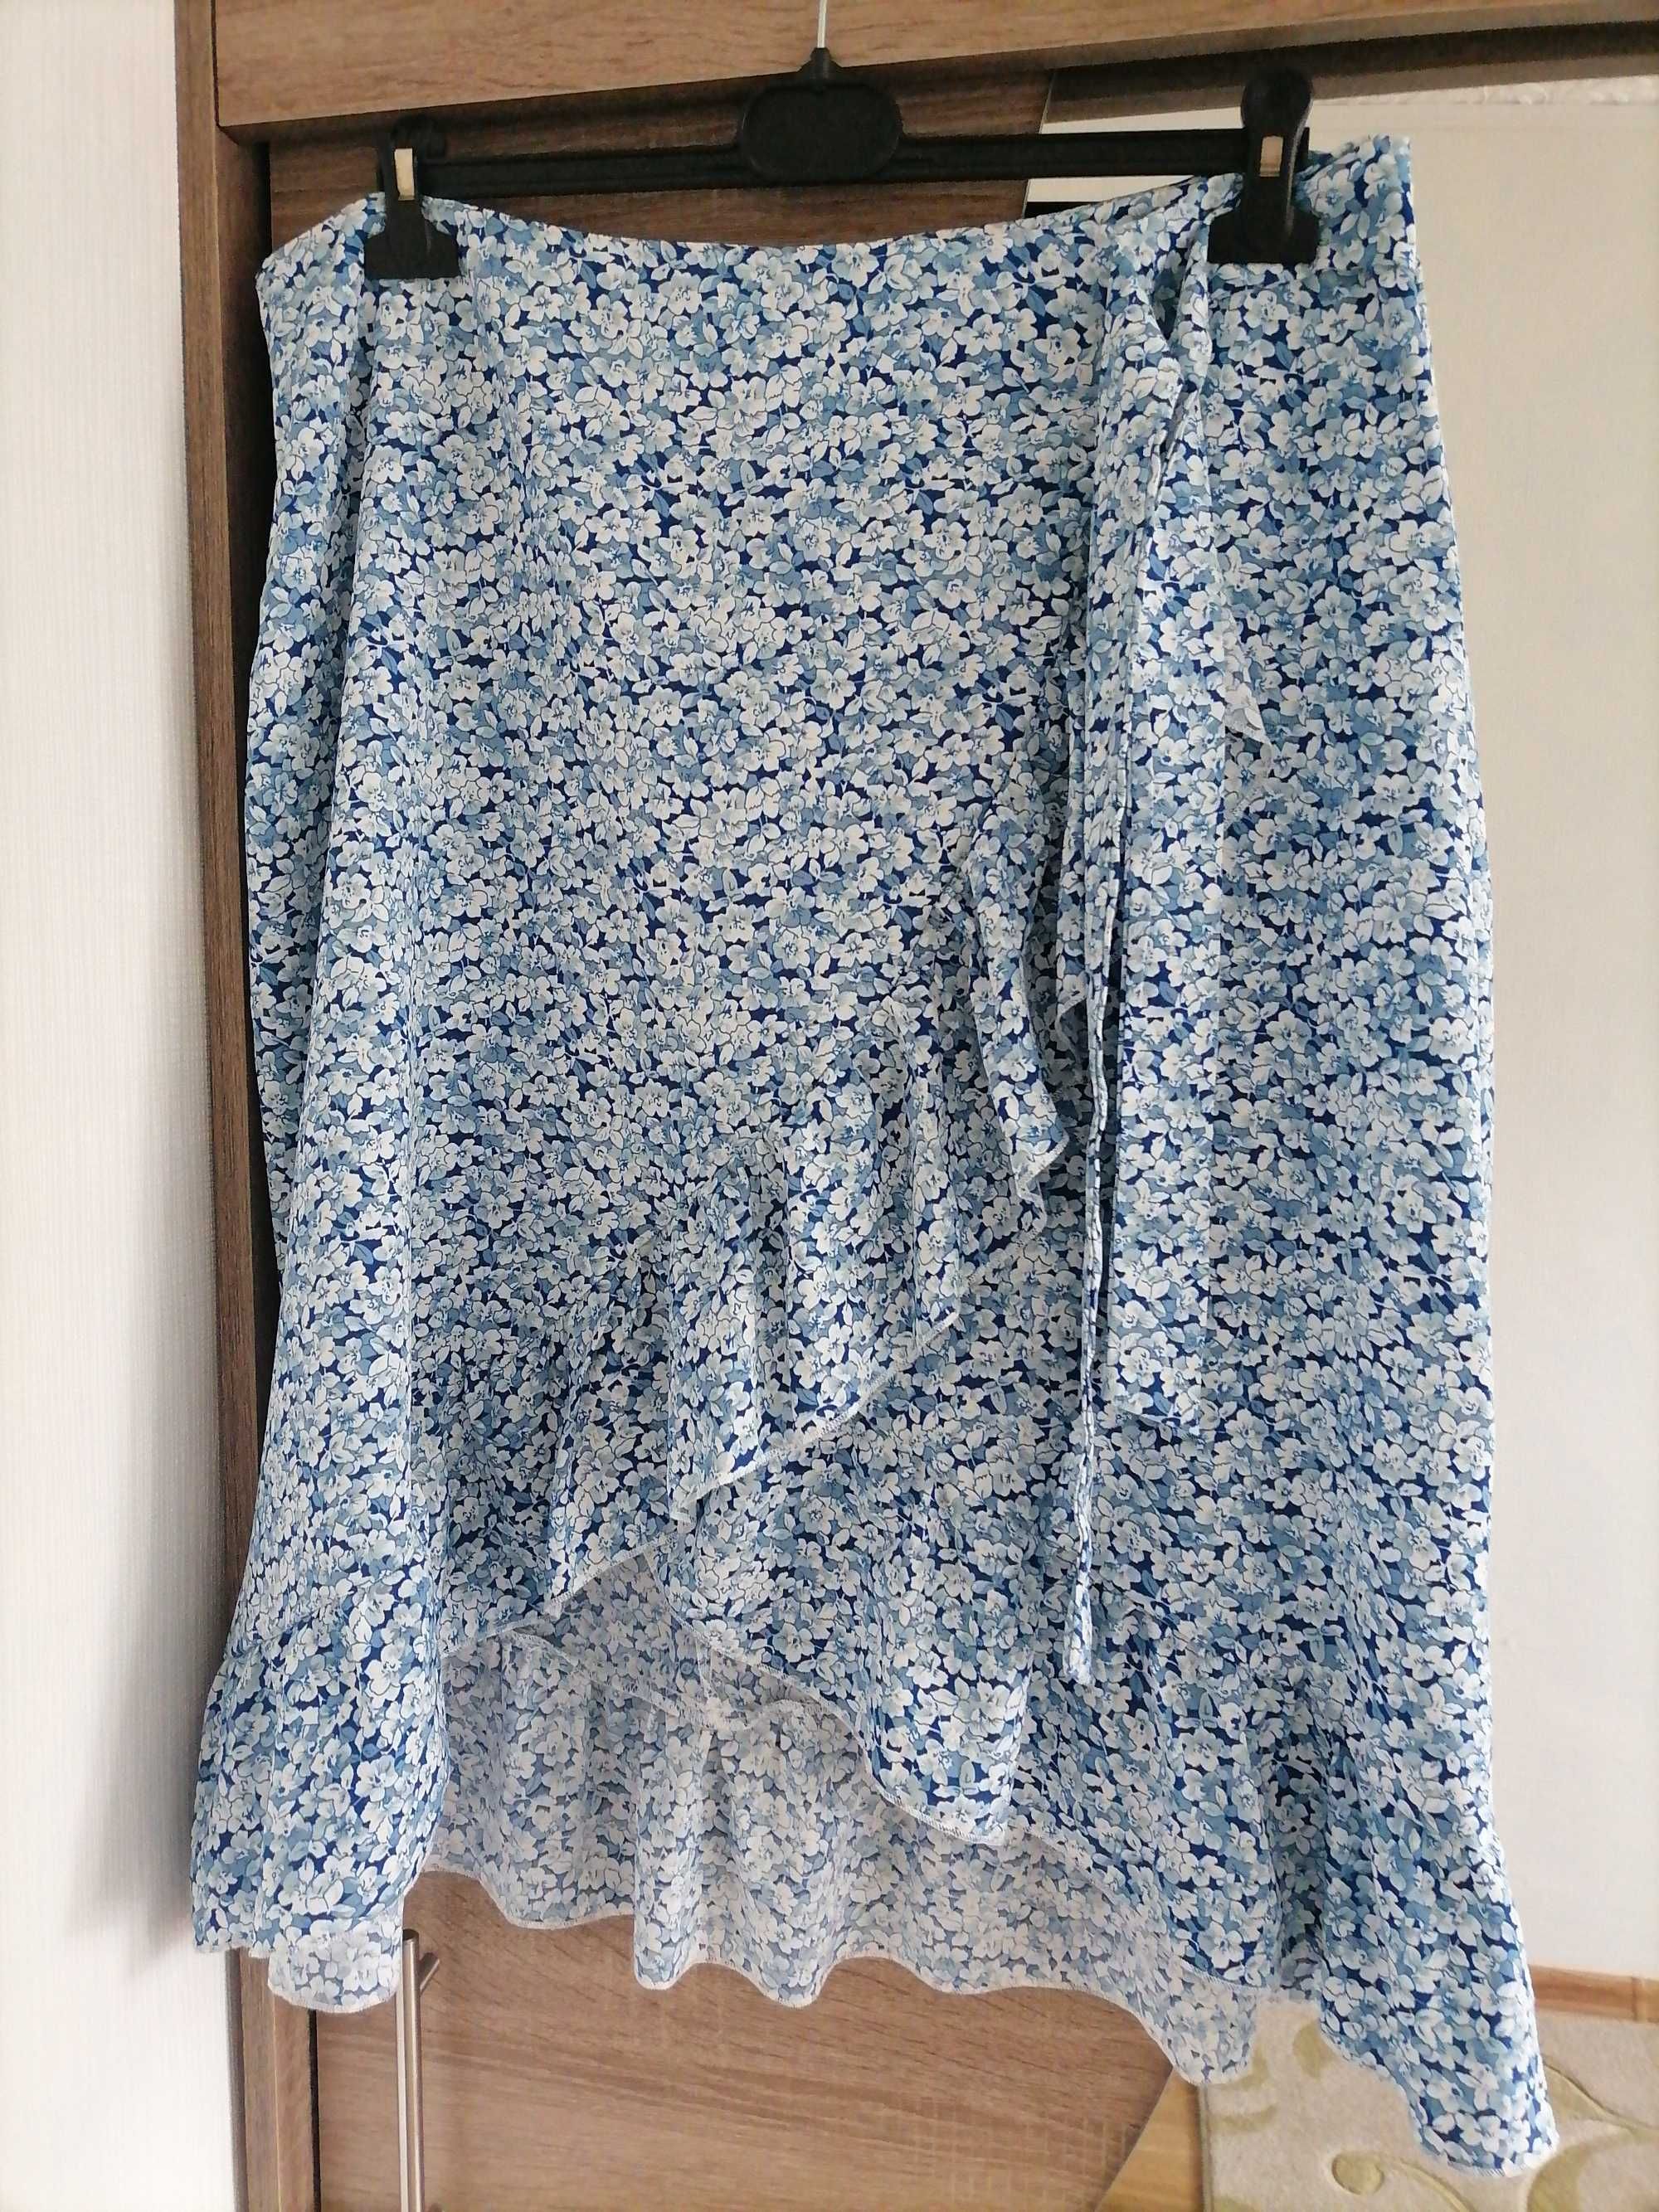 Spódnica letnia damska "SheinCurve" roz XL(48-20). Nowa.